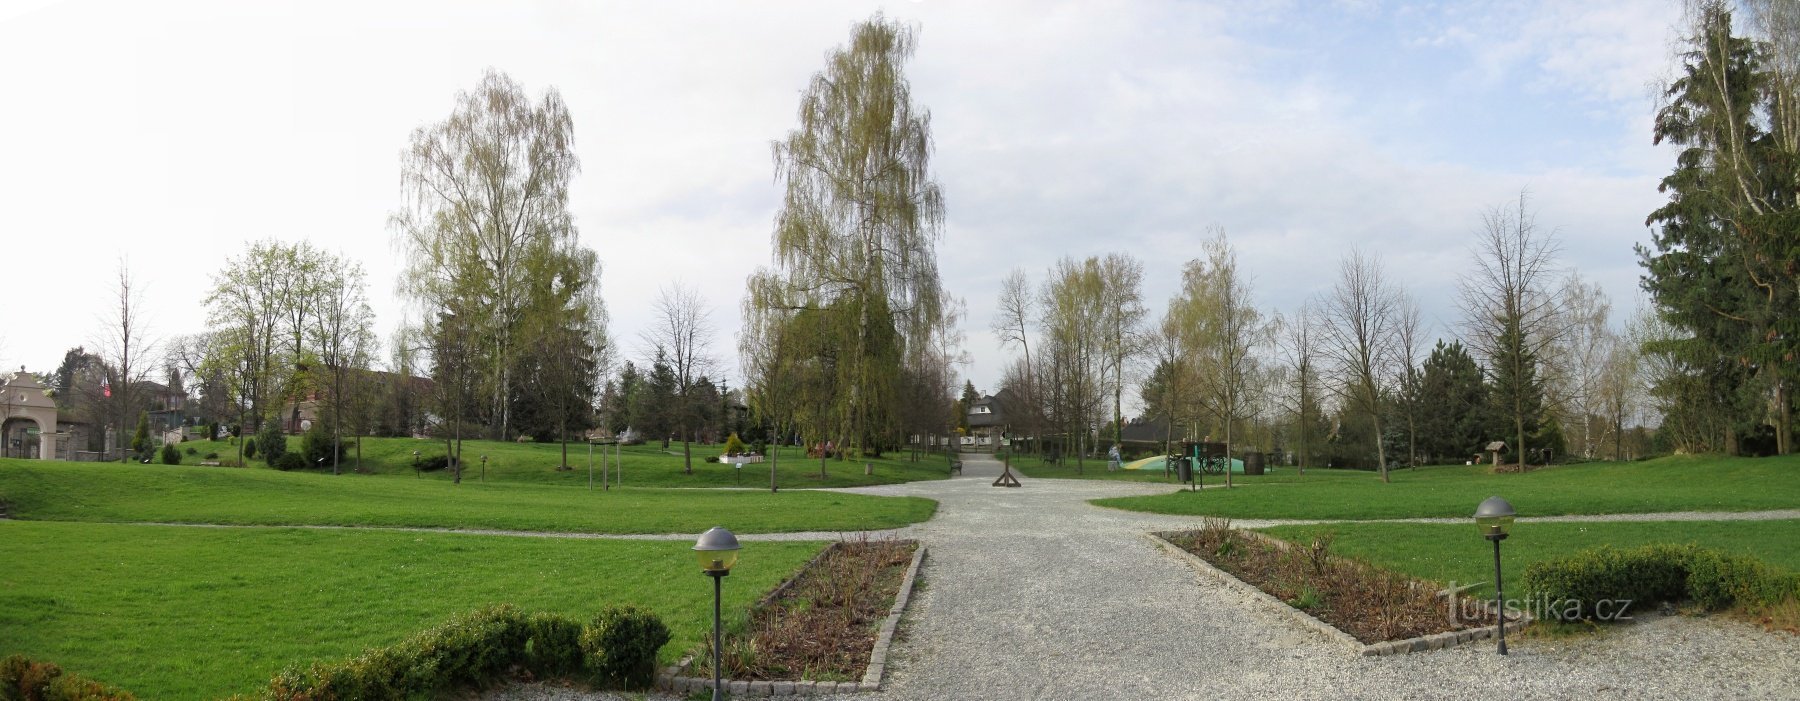 Kunice - Berchtoldin linna, puisto, jossa on pienoislinnoja ja koulutuspolku